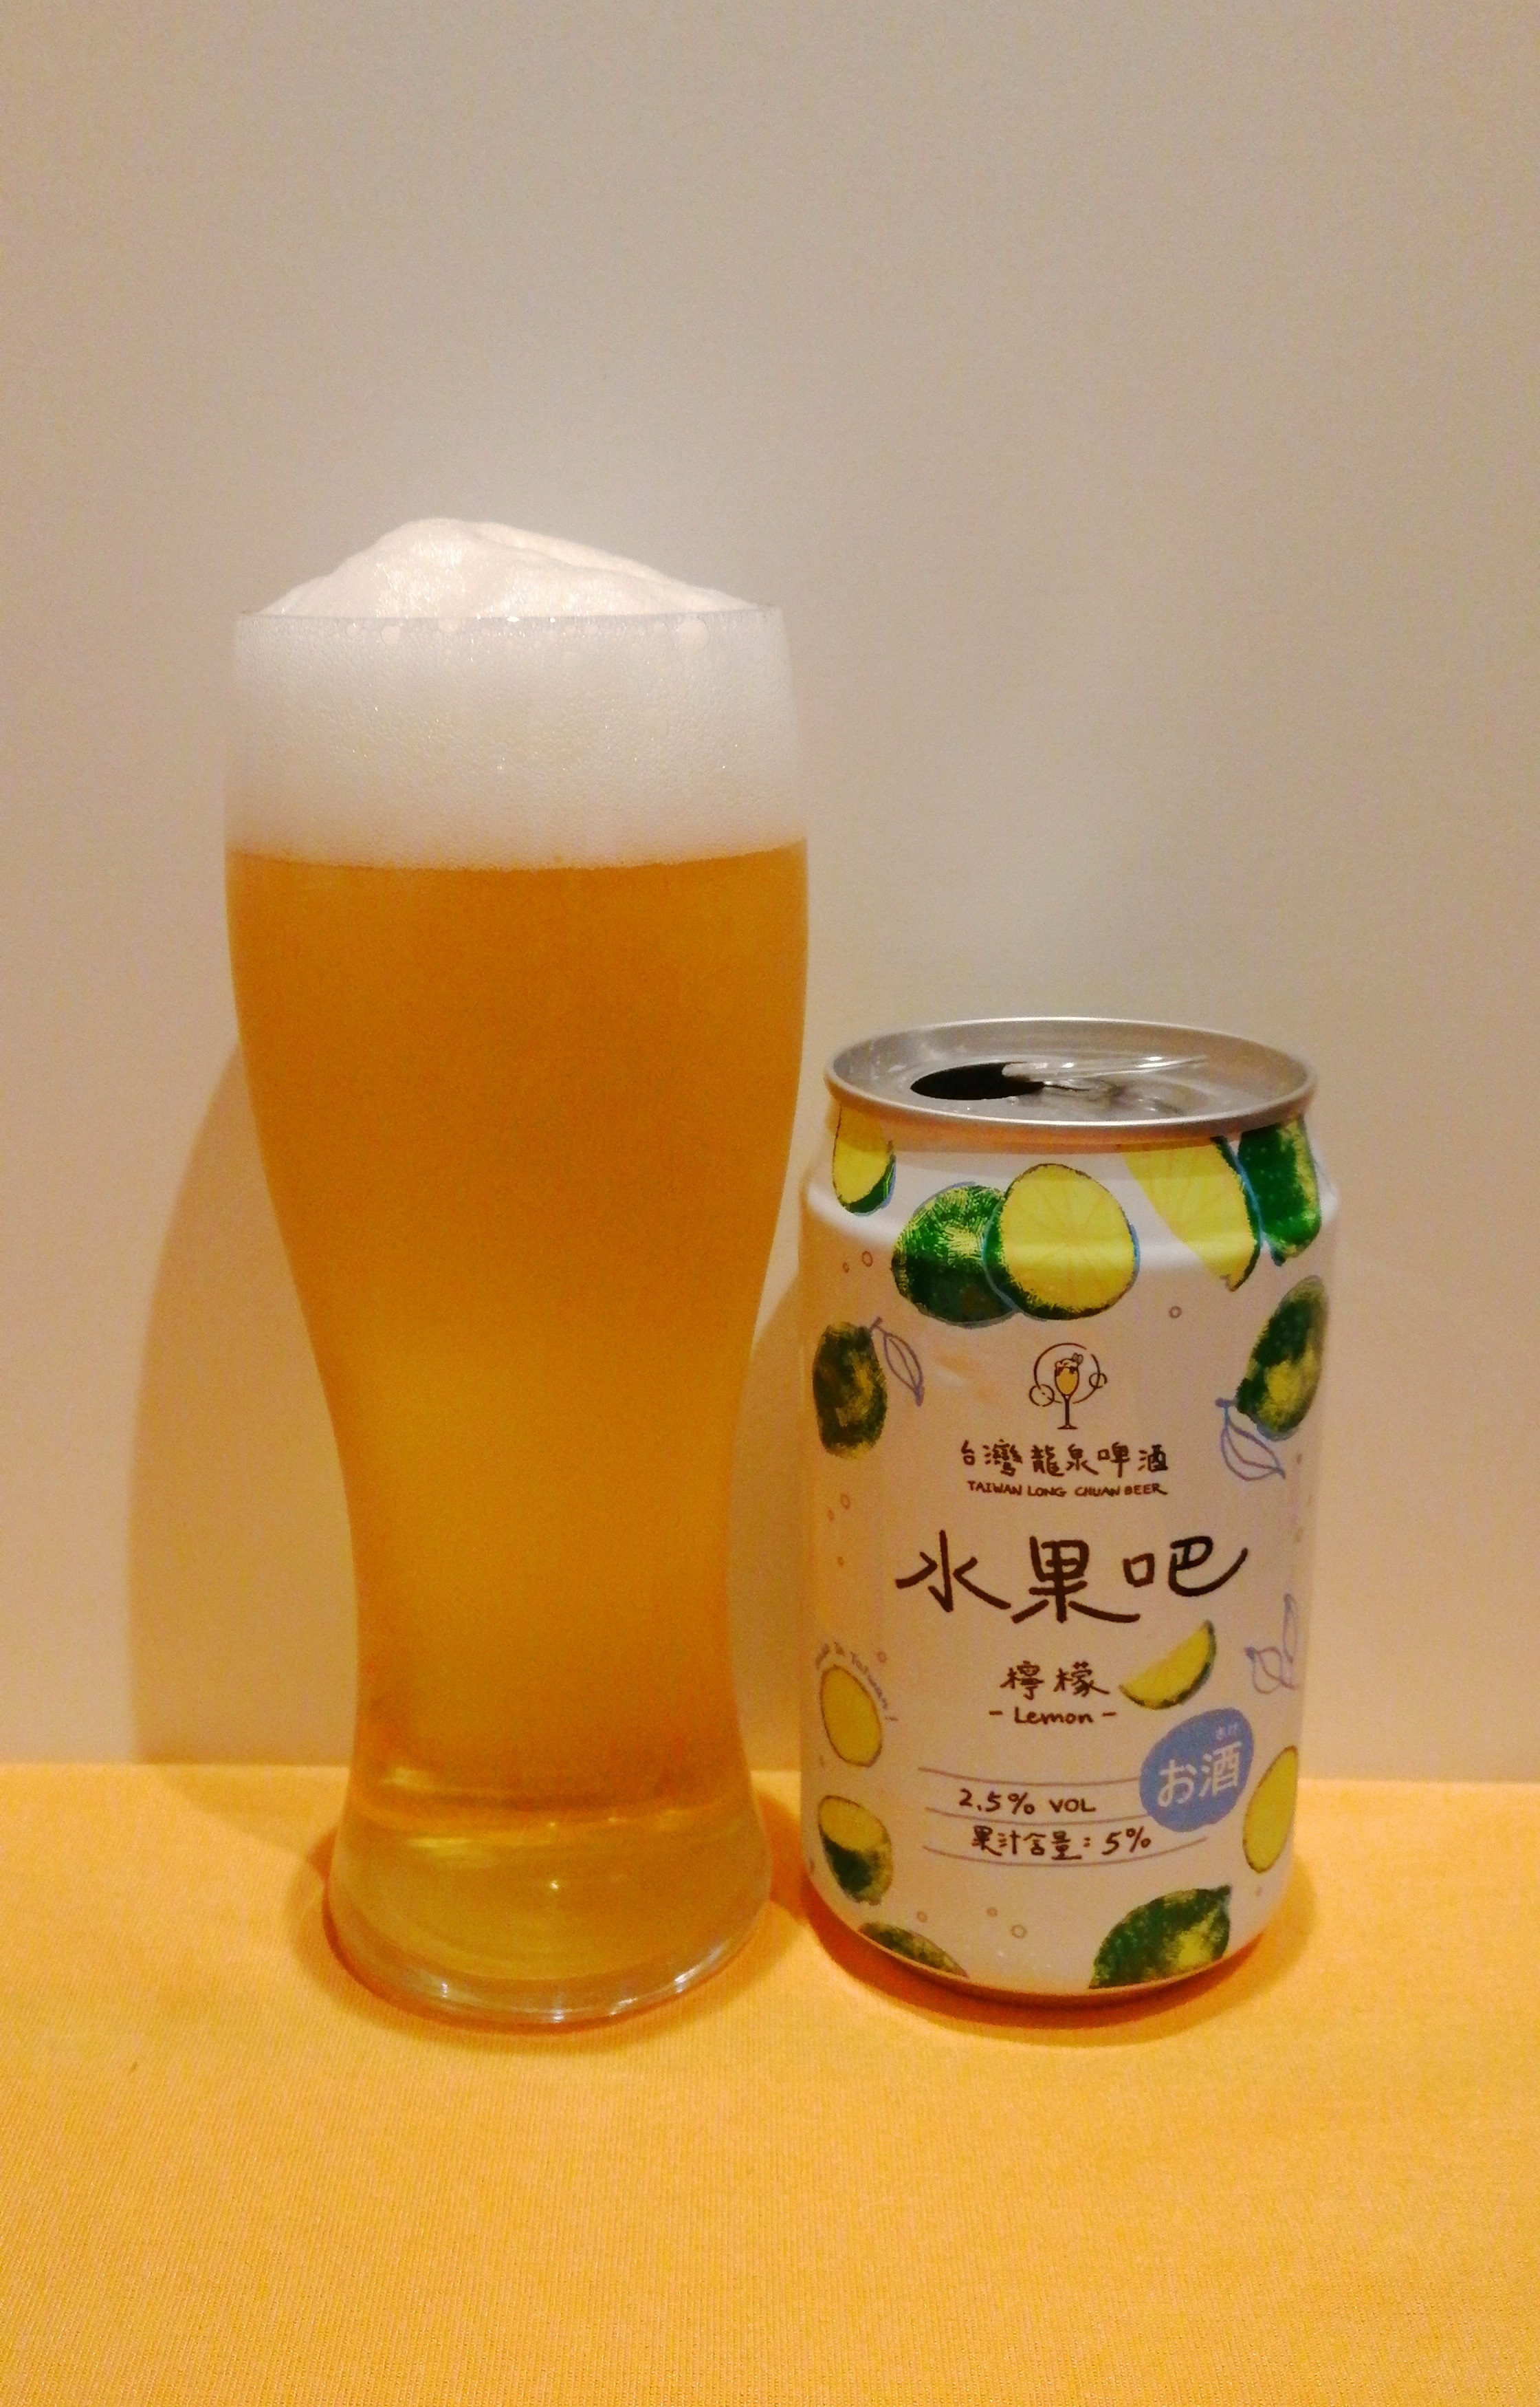 台灣龍泉啤酒,水果吧,檸檬